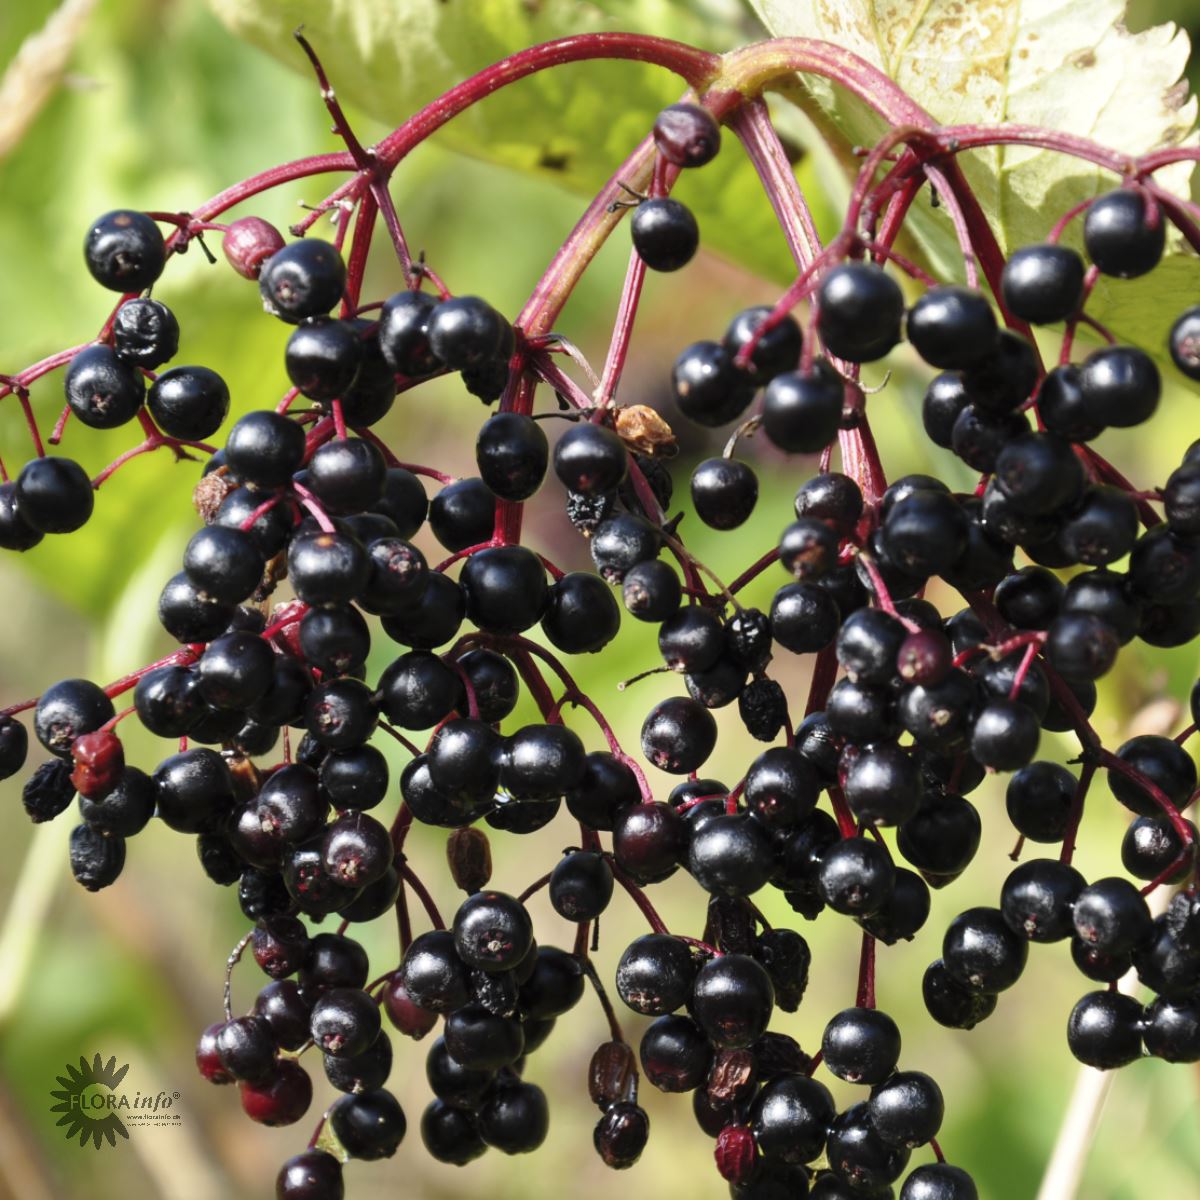 hyldens blomster bliver til sorte hyldebær efter modning og kan bruges til hyldebærsaft